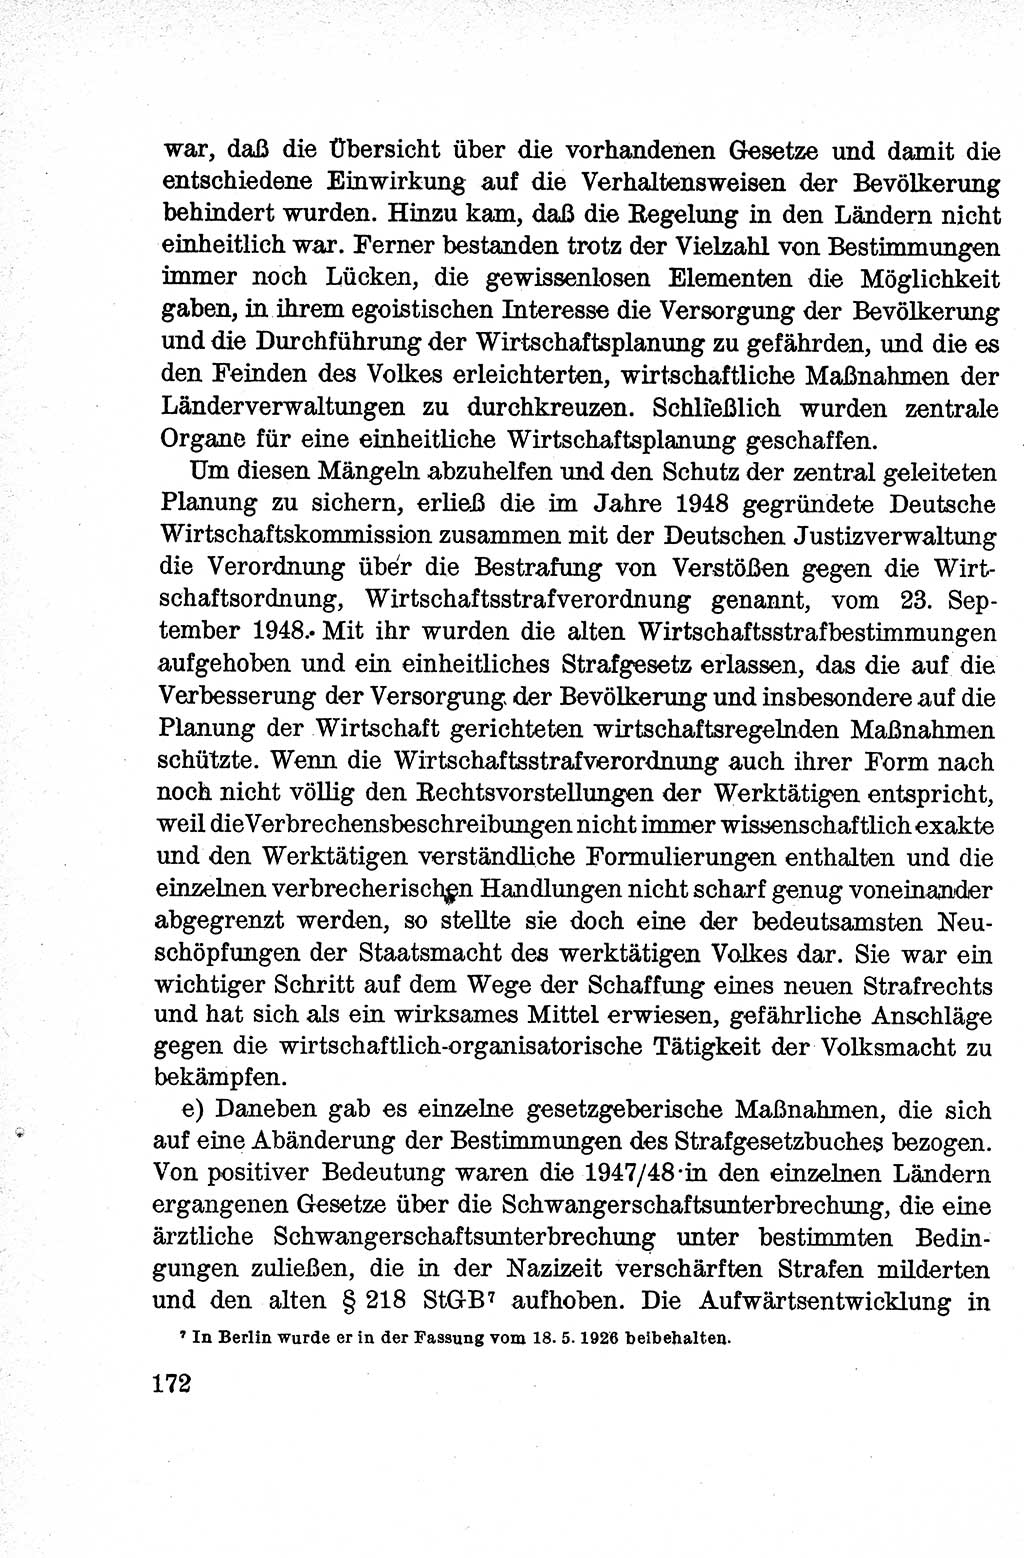 Lehrbuch des Strafrechts der Deutschen Demokratischen Republik (DDR), Allgemeiner Teil 1959, Seite 172 (Lb. Strafr. DDR AT 1959, S. 172)